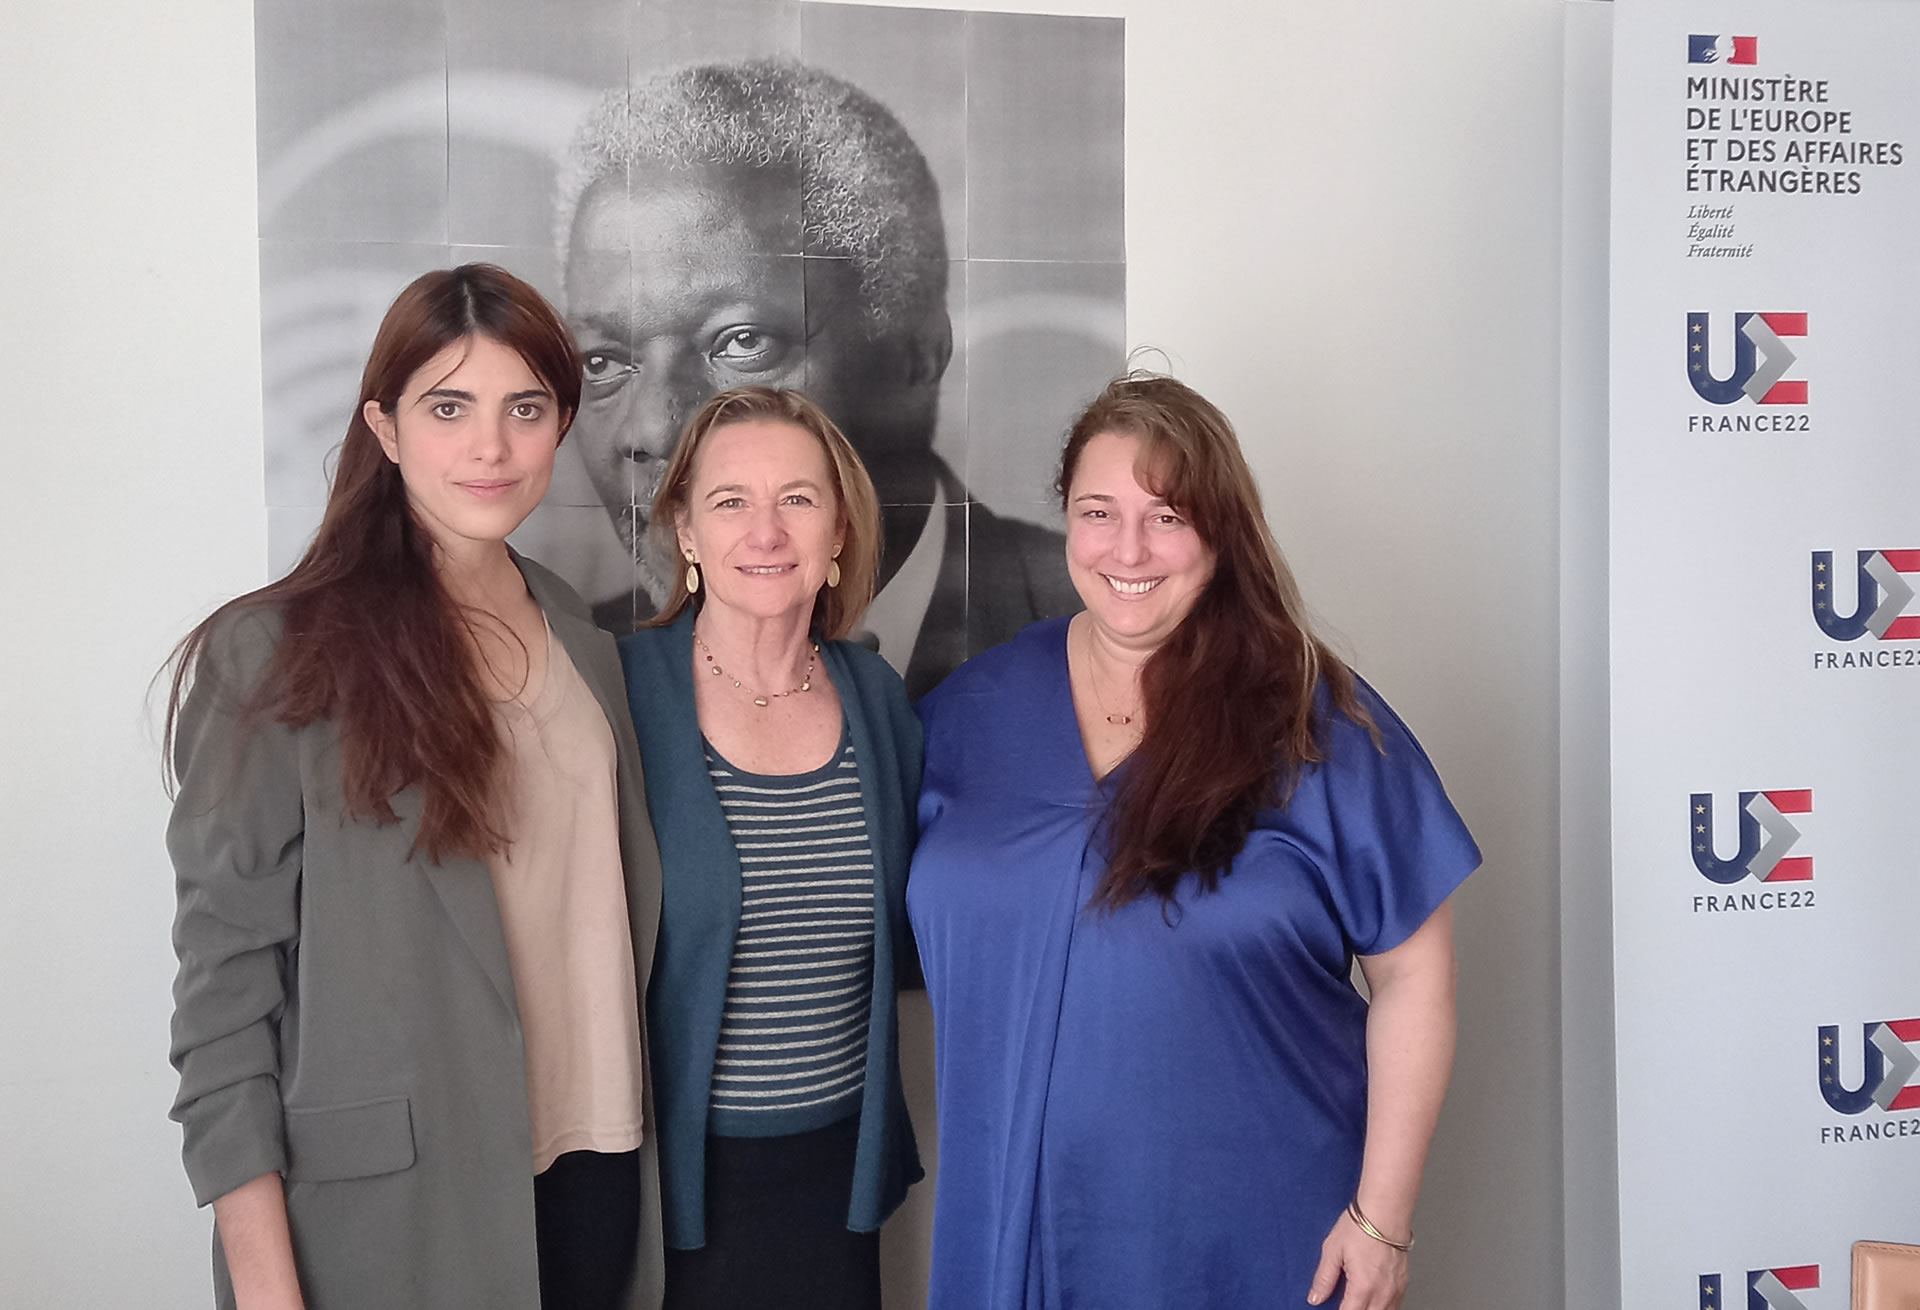 El jueves 28, Barrero y Bruguera mantuvieron una reunión con Dolphine Borione, Embajadora de Derechos Humanos del Ministerio de Relaciones Exteriores y Asuntos Europeos de Francia.